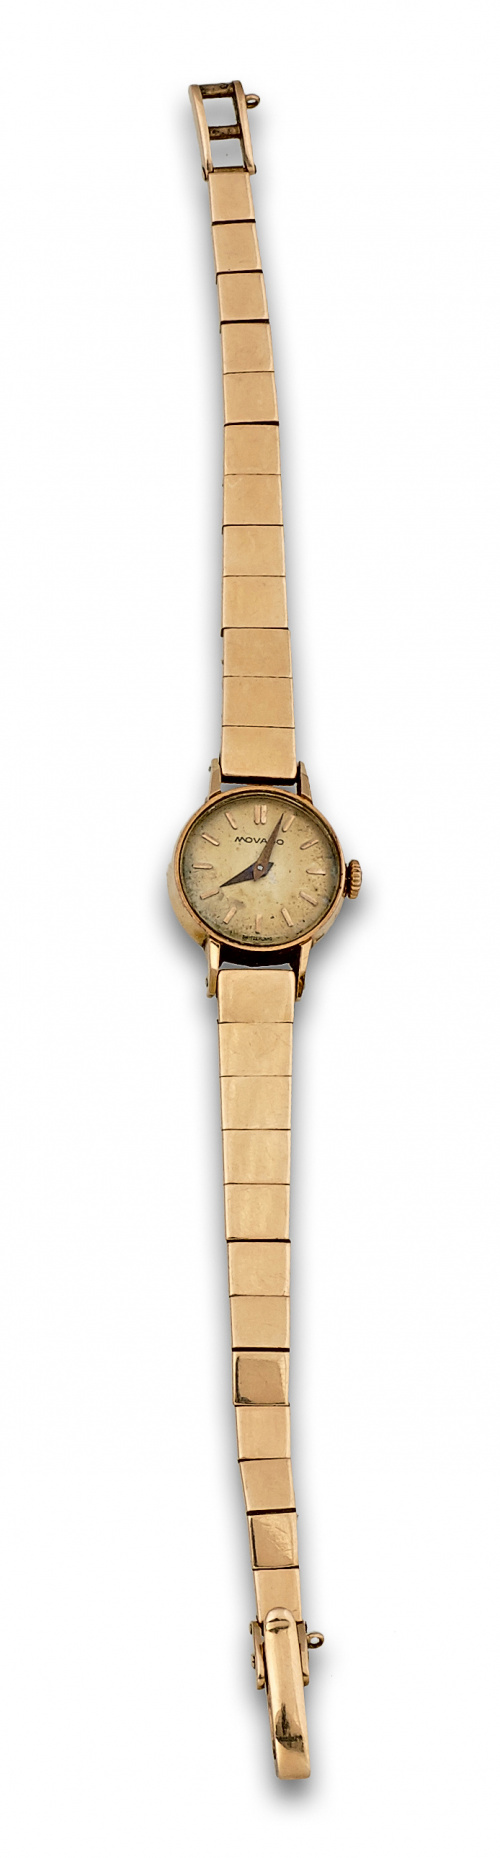 Reloj MOVADO años 50 con pulsera de piezas cuadradas articu